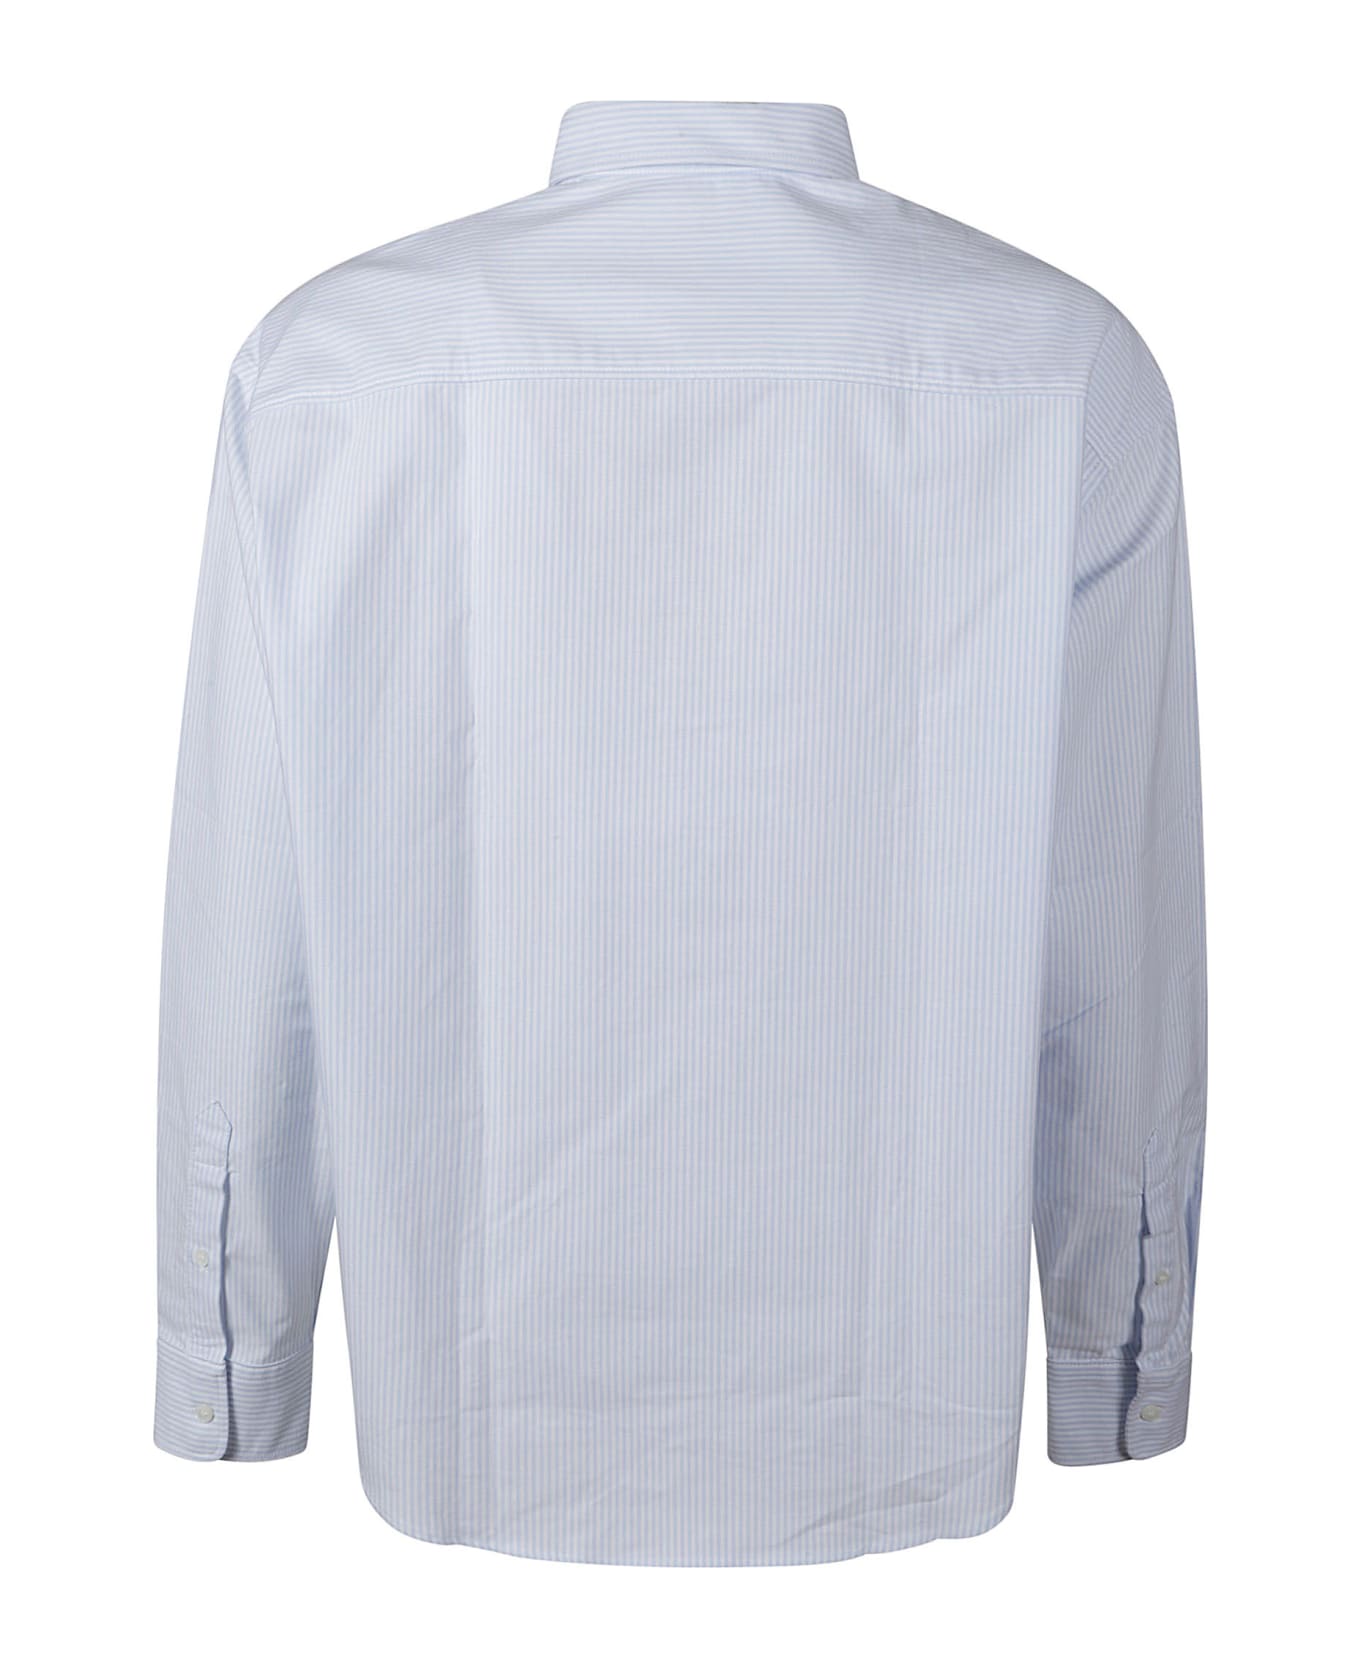 Ami Alexandre Mattiussi Logo Embroidered Stripe Shirt - Blue/White